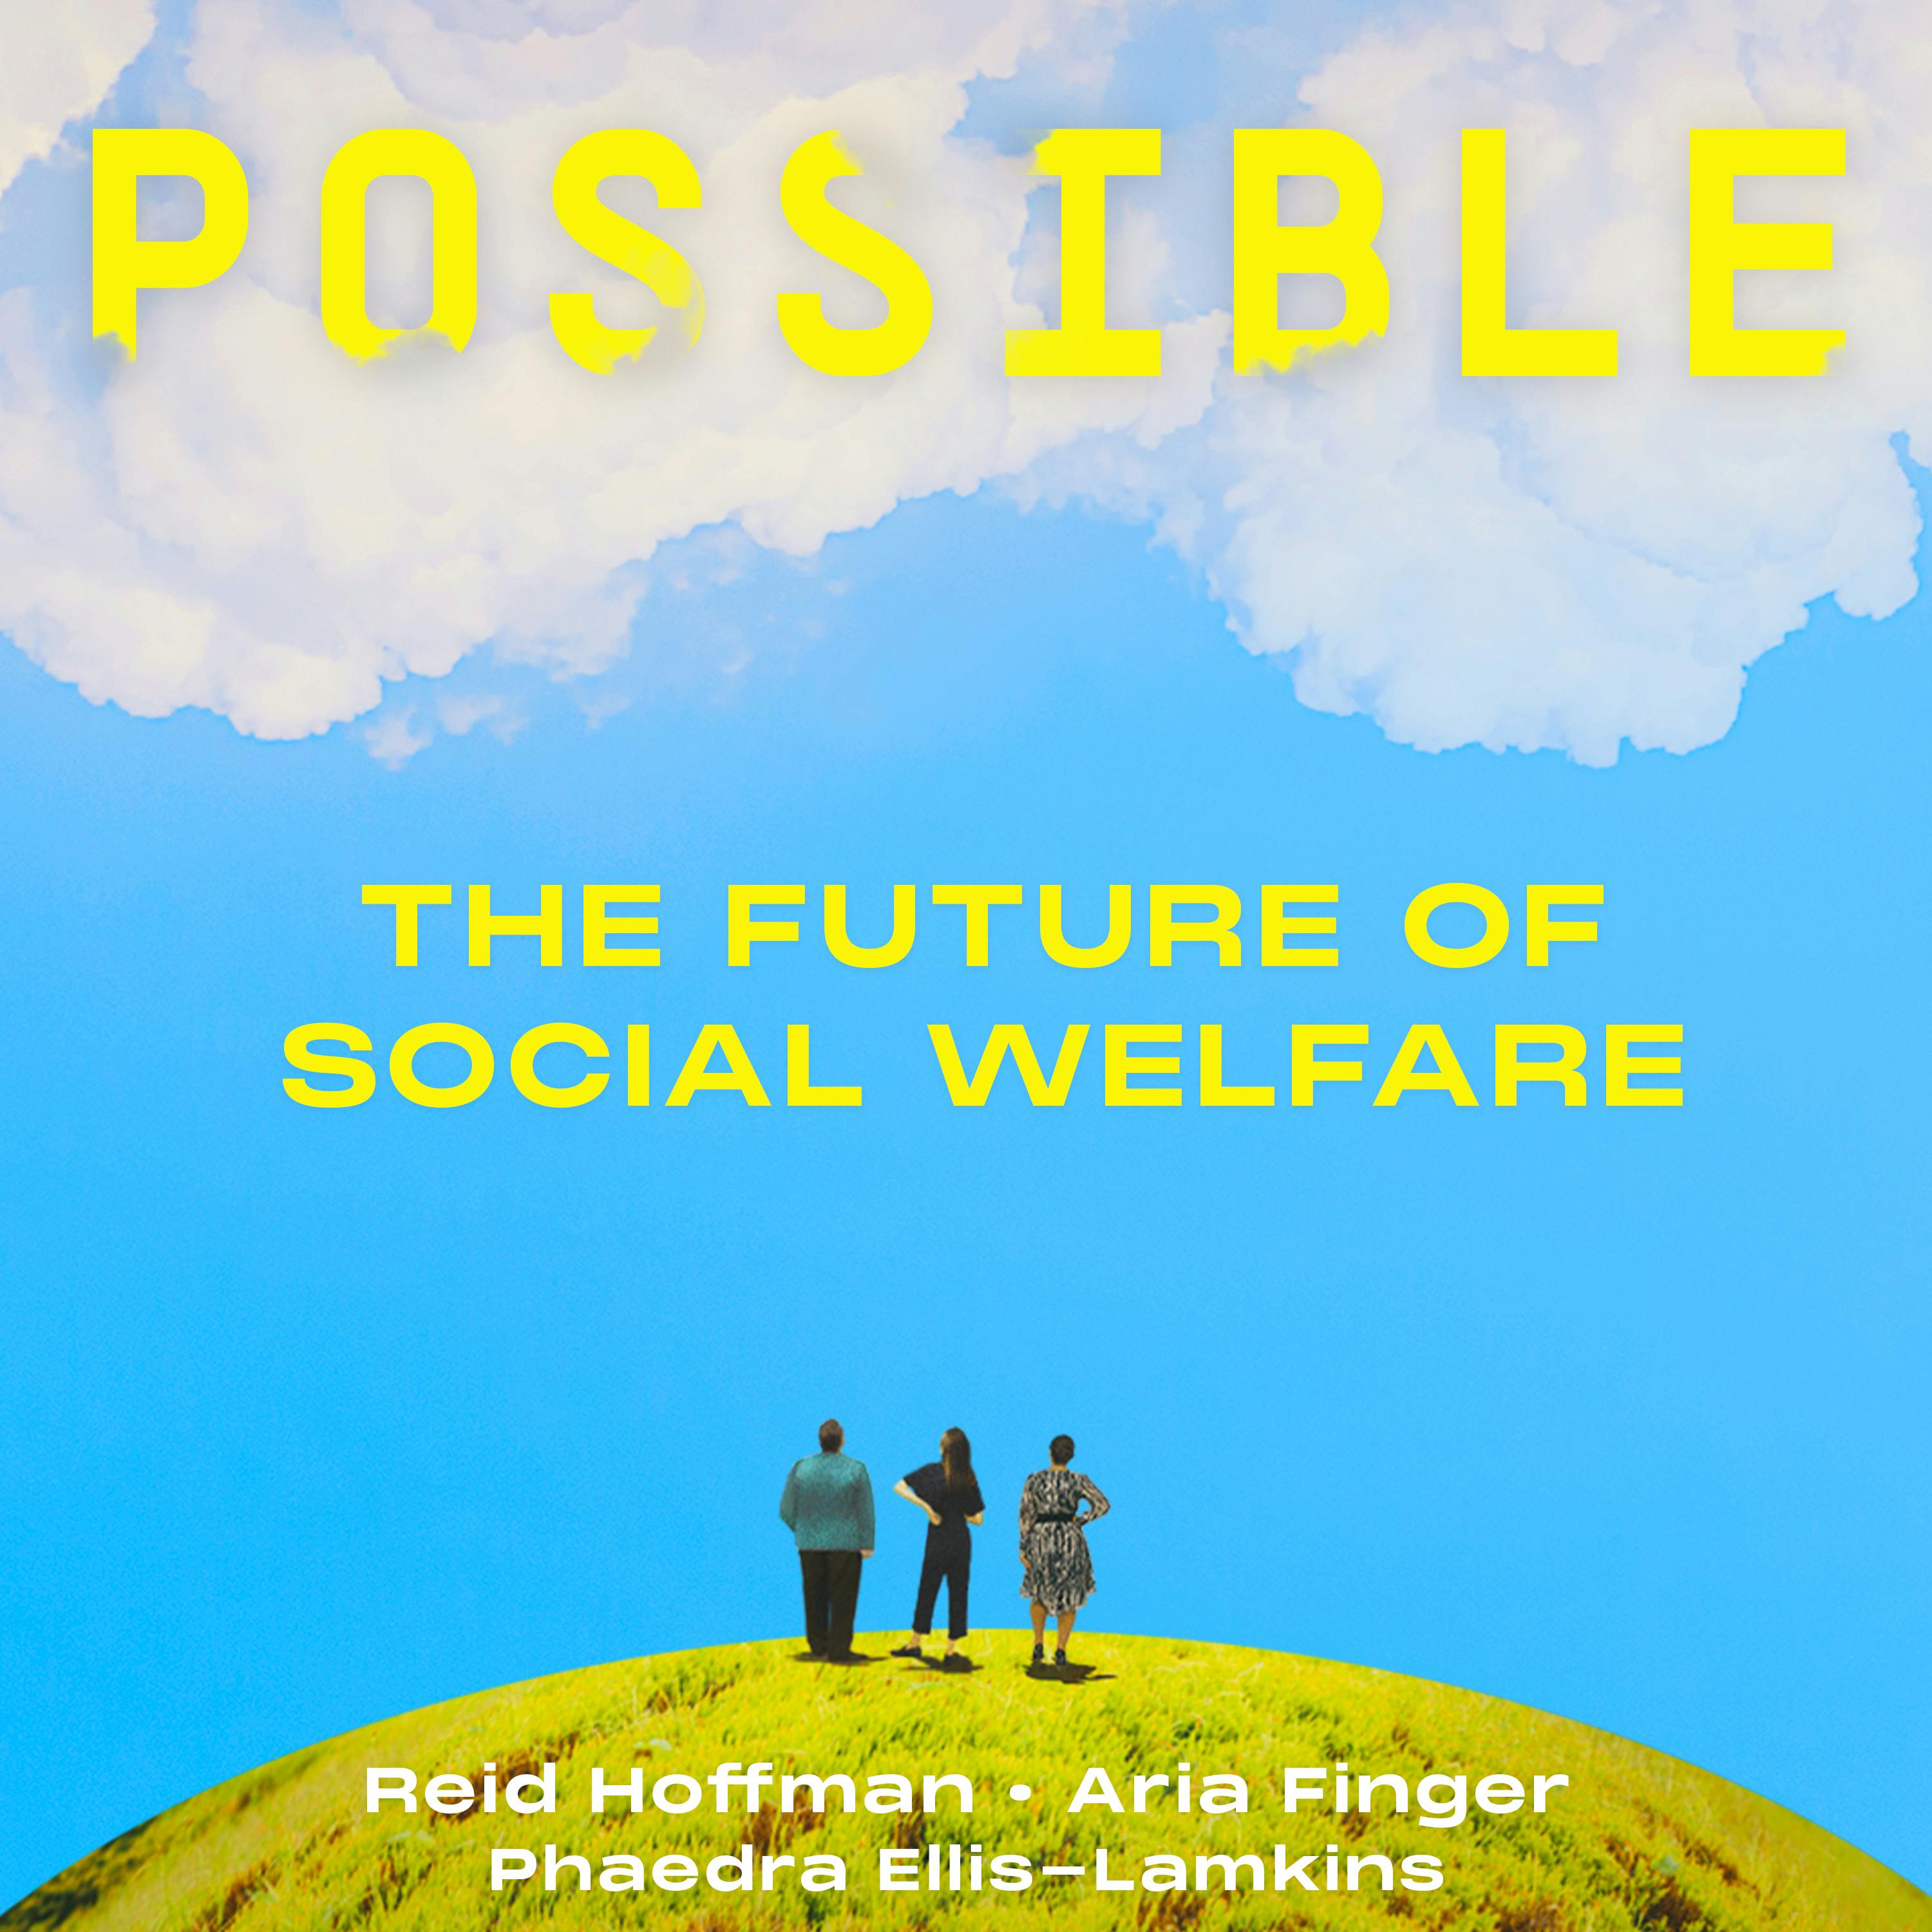 Phaedra Ellis-Lamkins on the future of social welfare